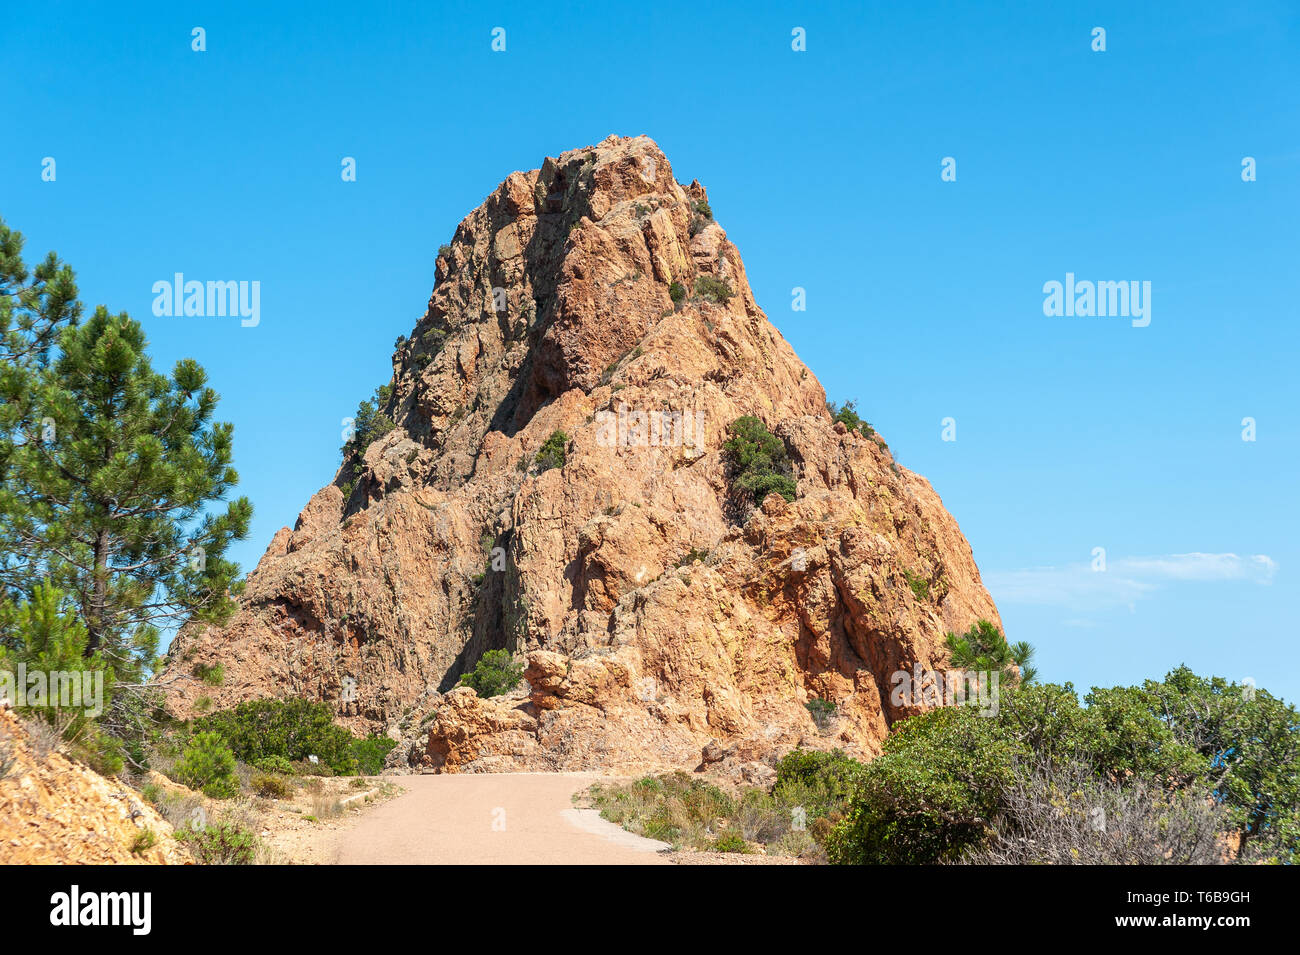 Rocher de Saint-Barthélemy dans le Massif de l'Ésterel, Antheor, Var, Provence-Alpes-Côte d'Azur, France, Europe Banque D'Images